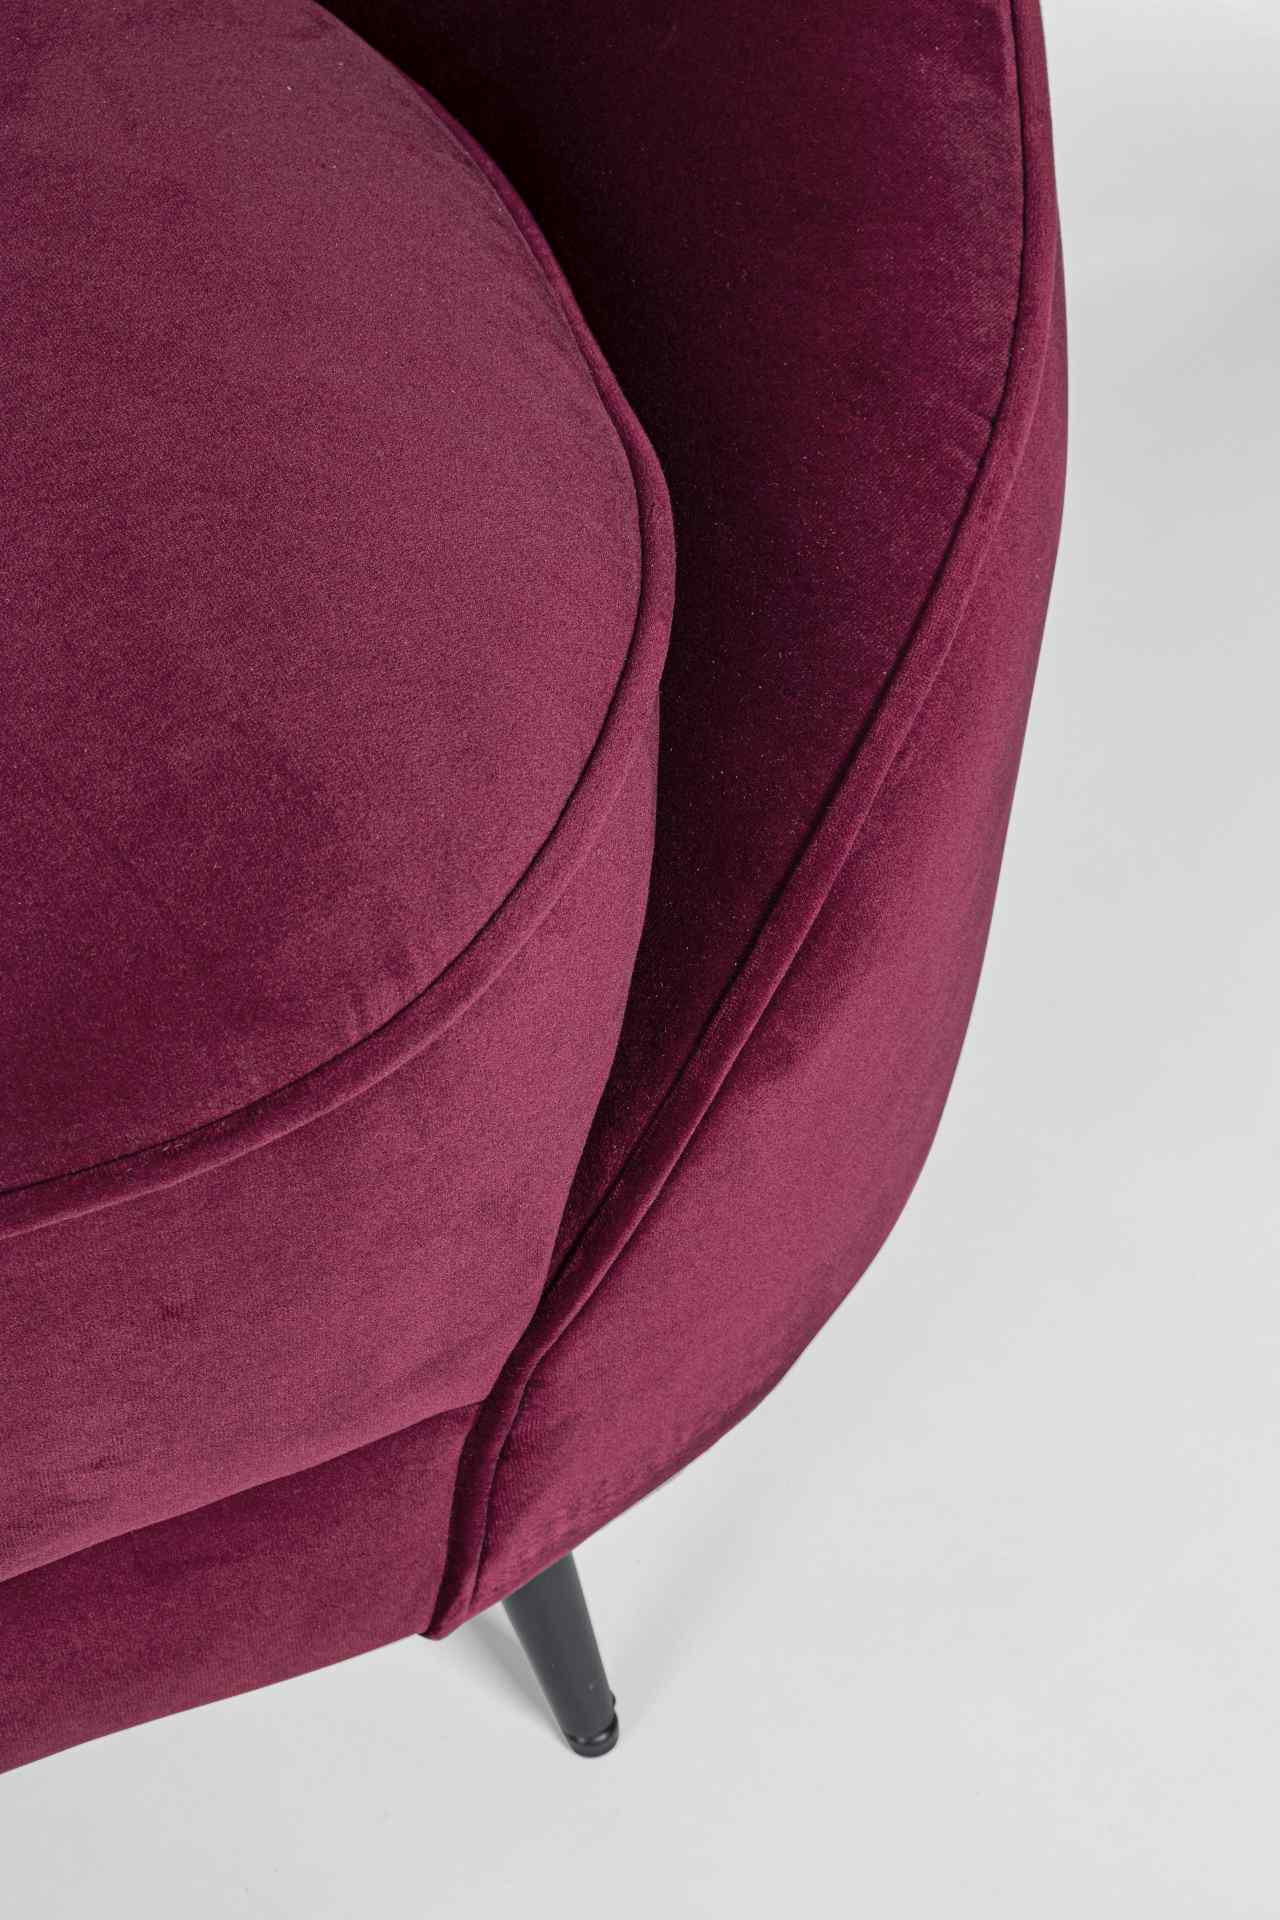 Das Sofa Seraphin überzeugt mit seinem modernen Design. Gefertigt wurde es aus Stoff in Samt-Optik, welcher einen roten Farbton besitzt. Das Gestell ist aus Metall und hat eine schwarze Farbe. Das Sofa ist in der Ausführung als 2-Sitzer. Die Breite beträg